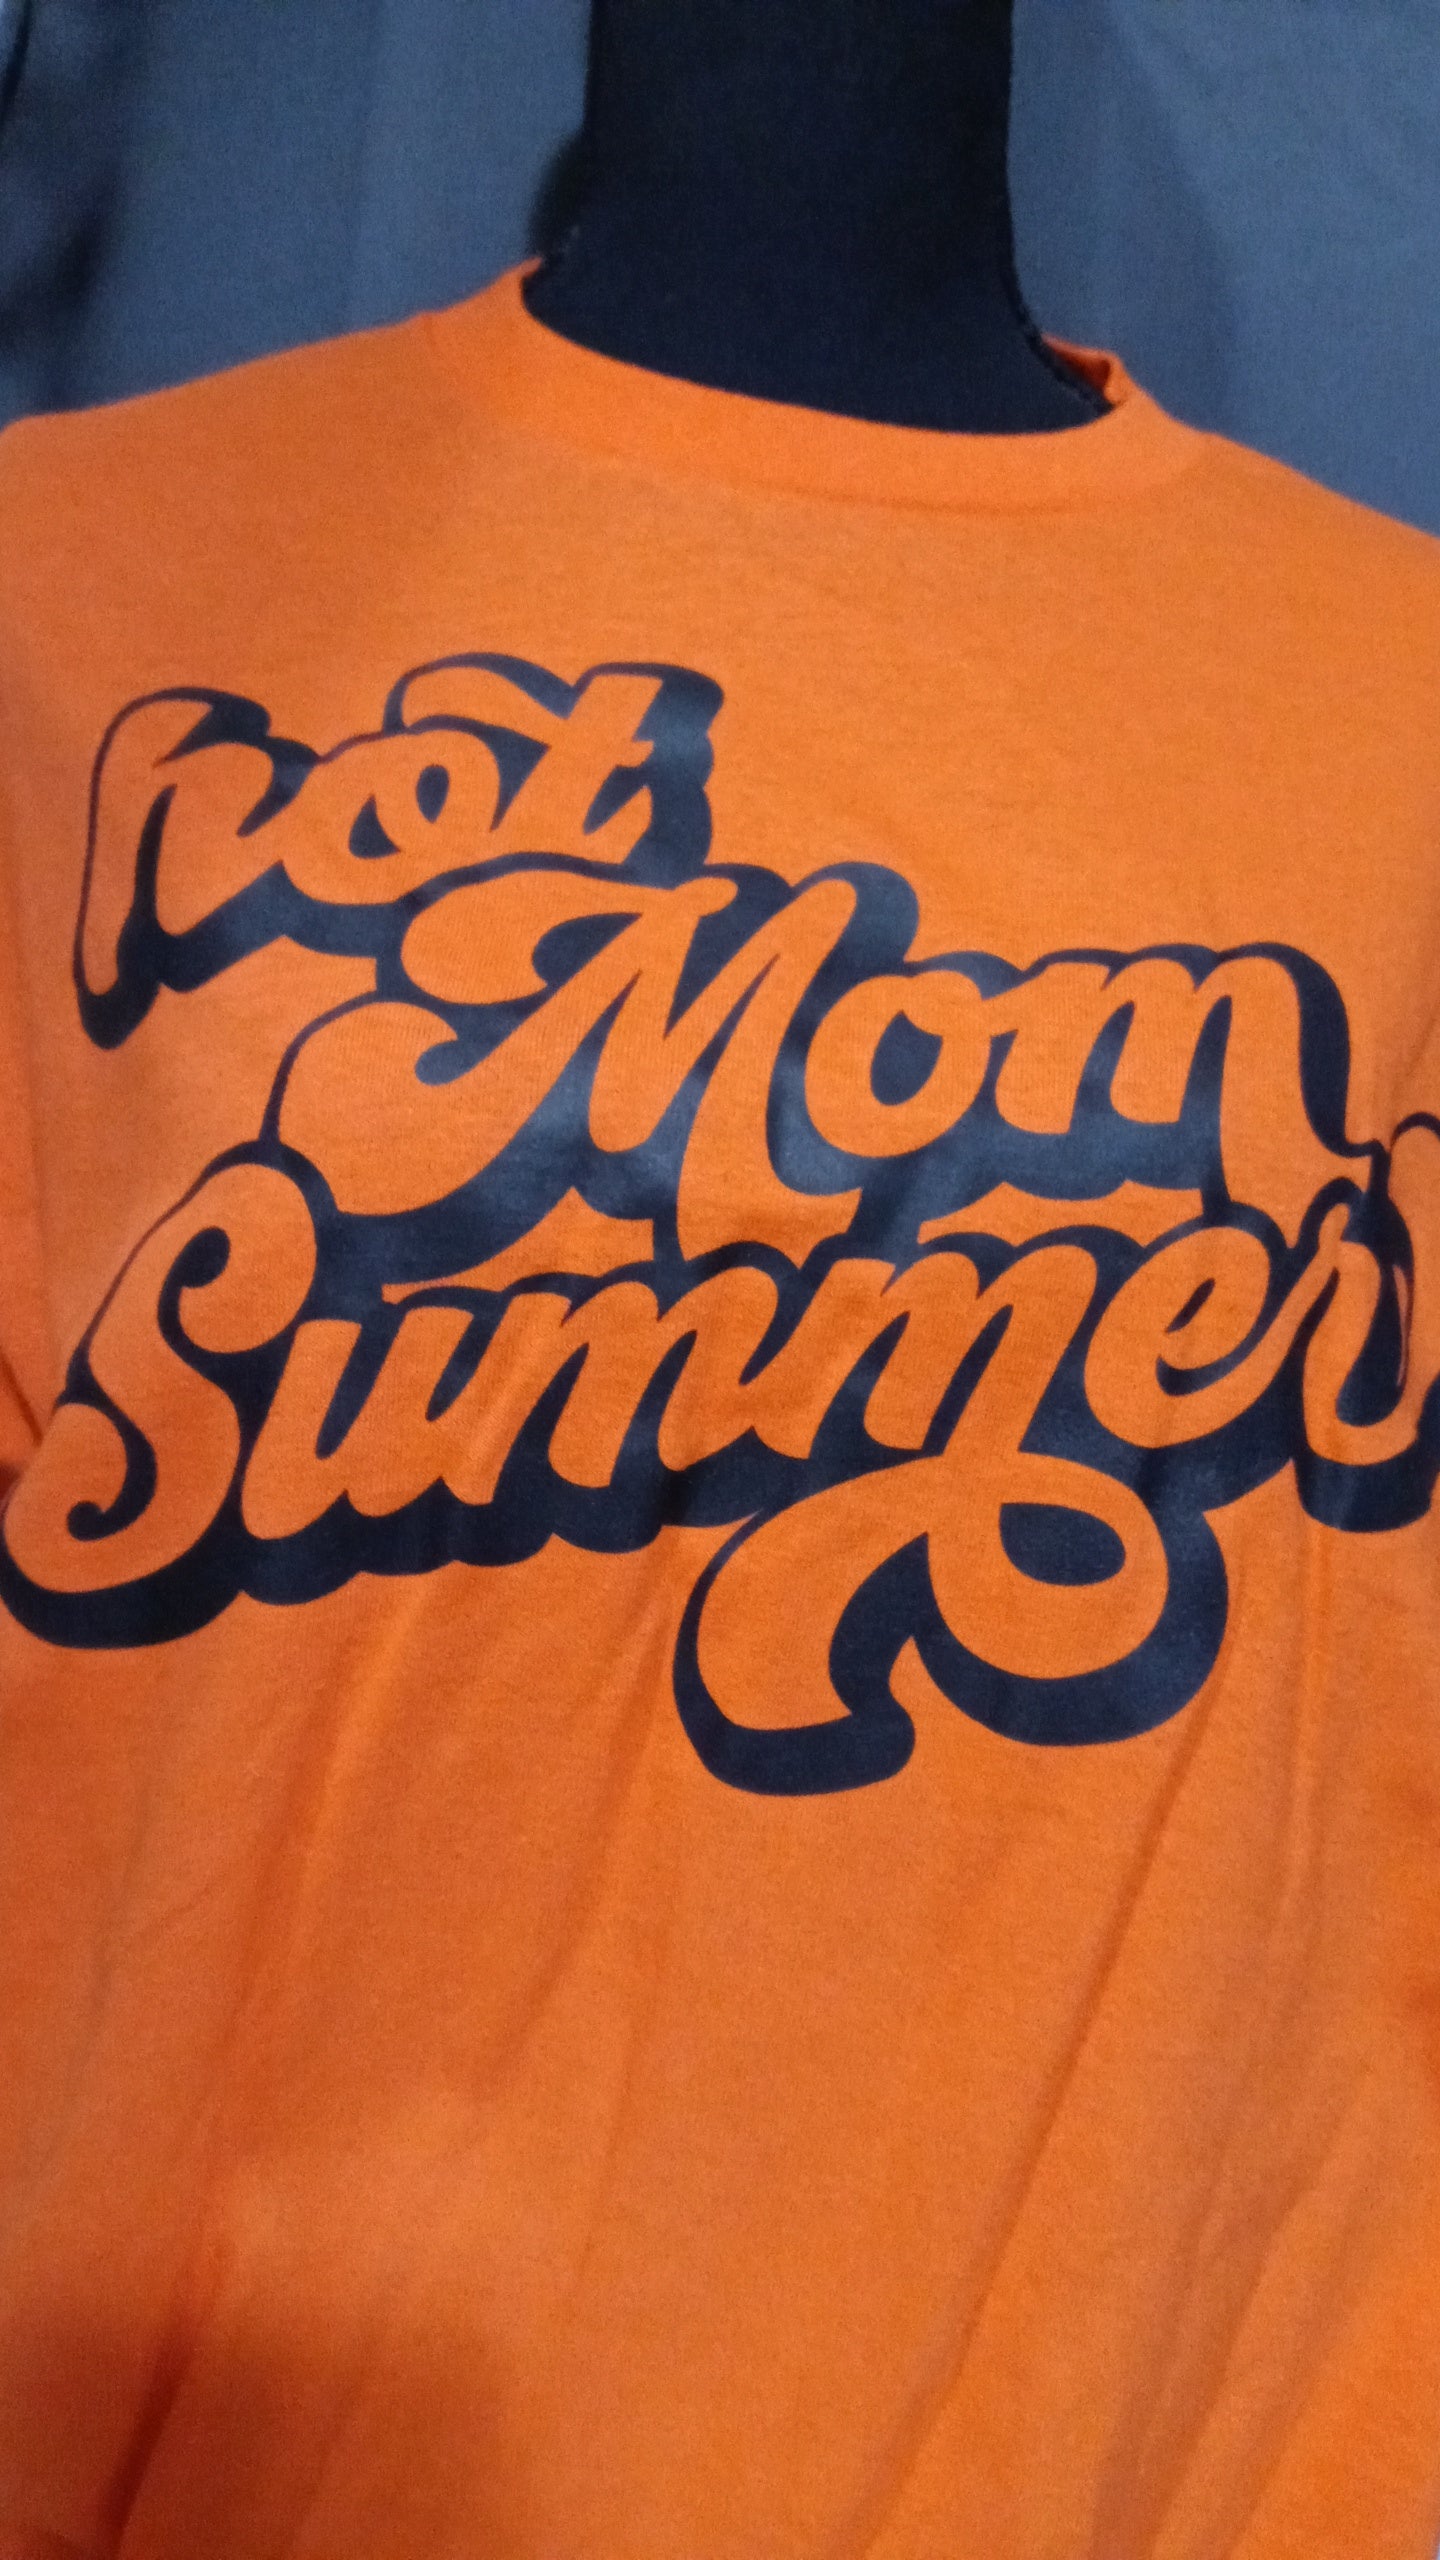 Hot Mom Summer T-shirt